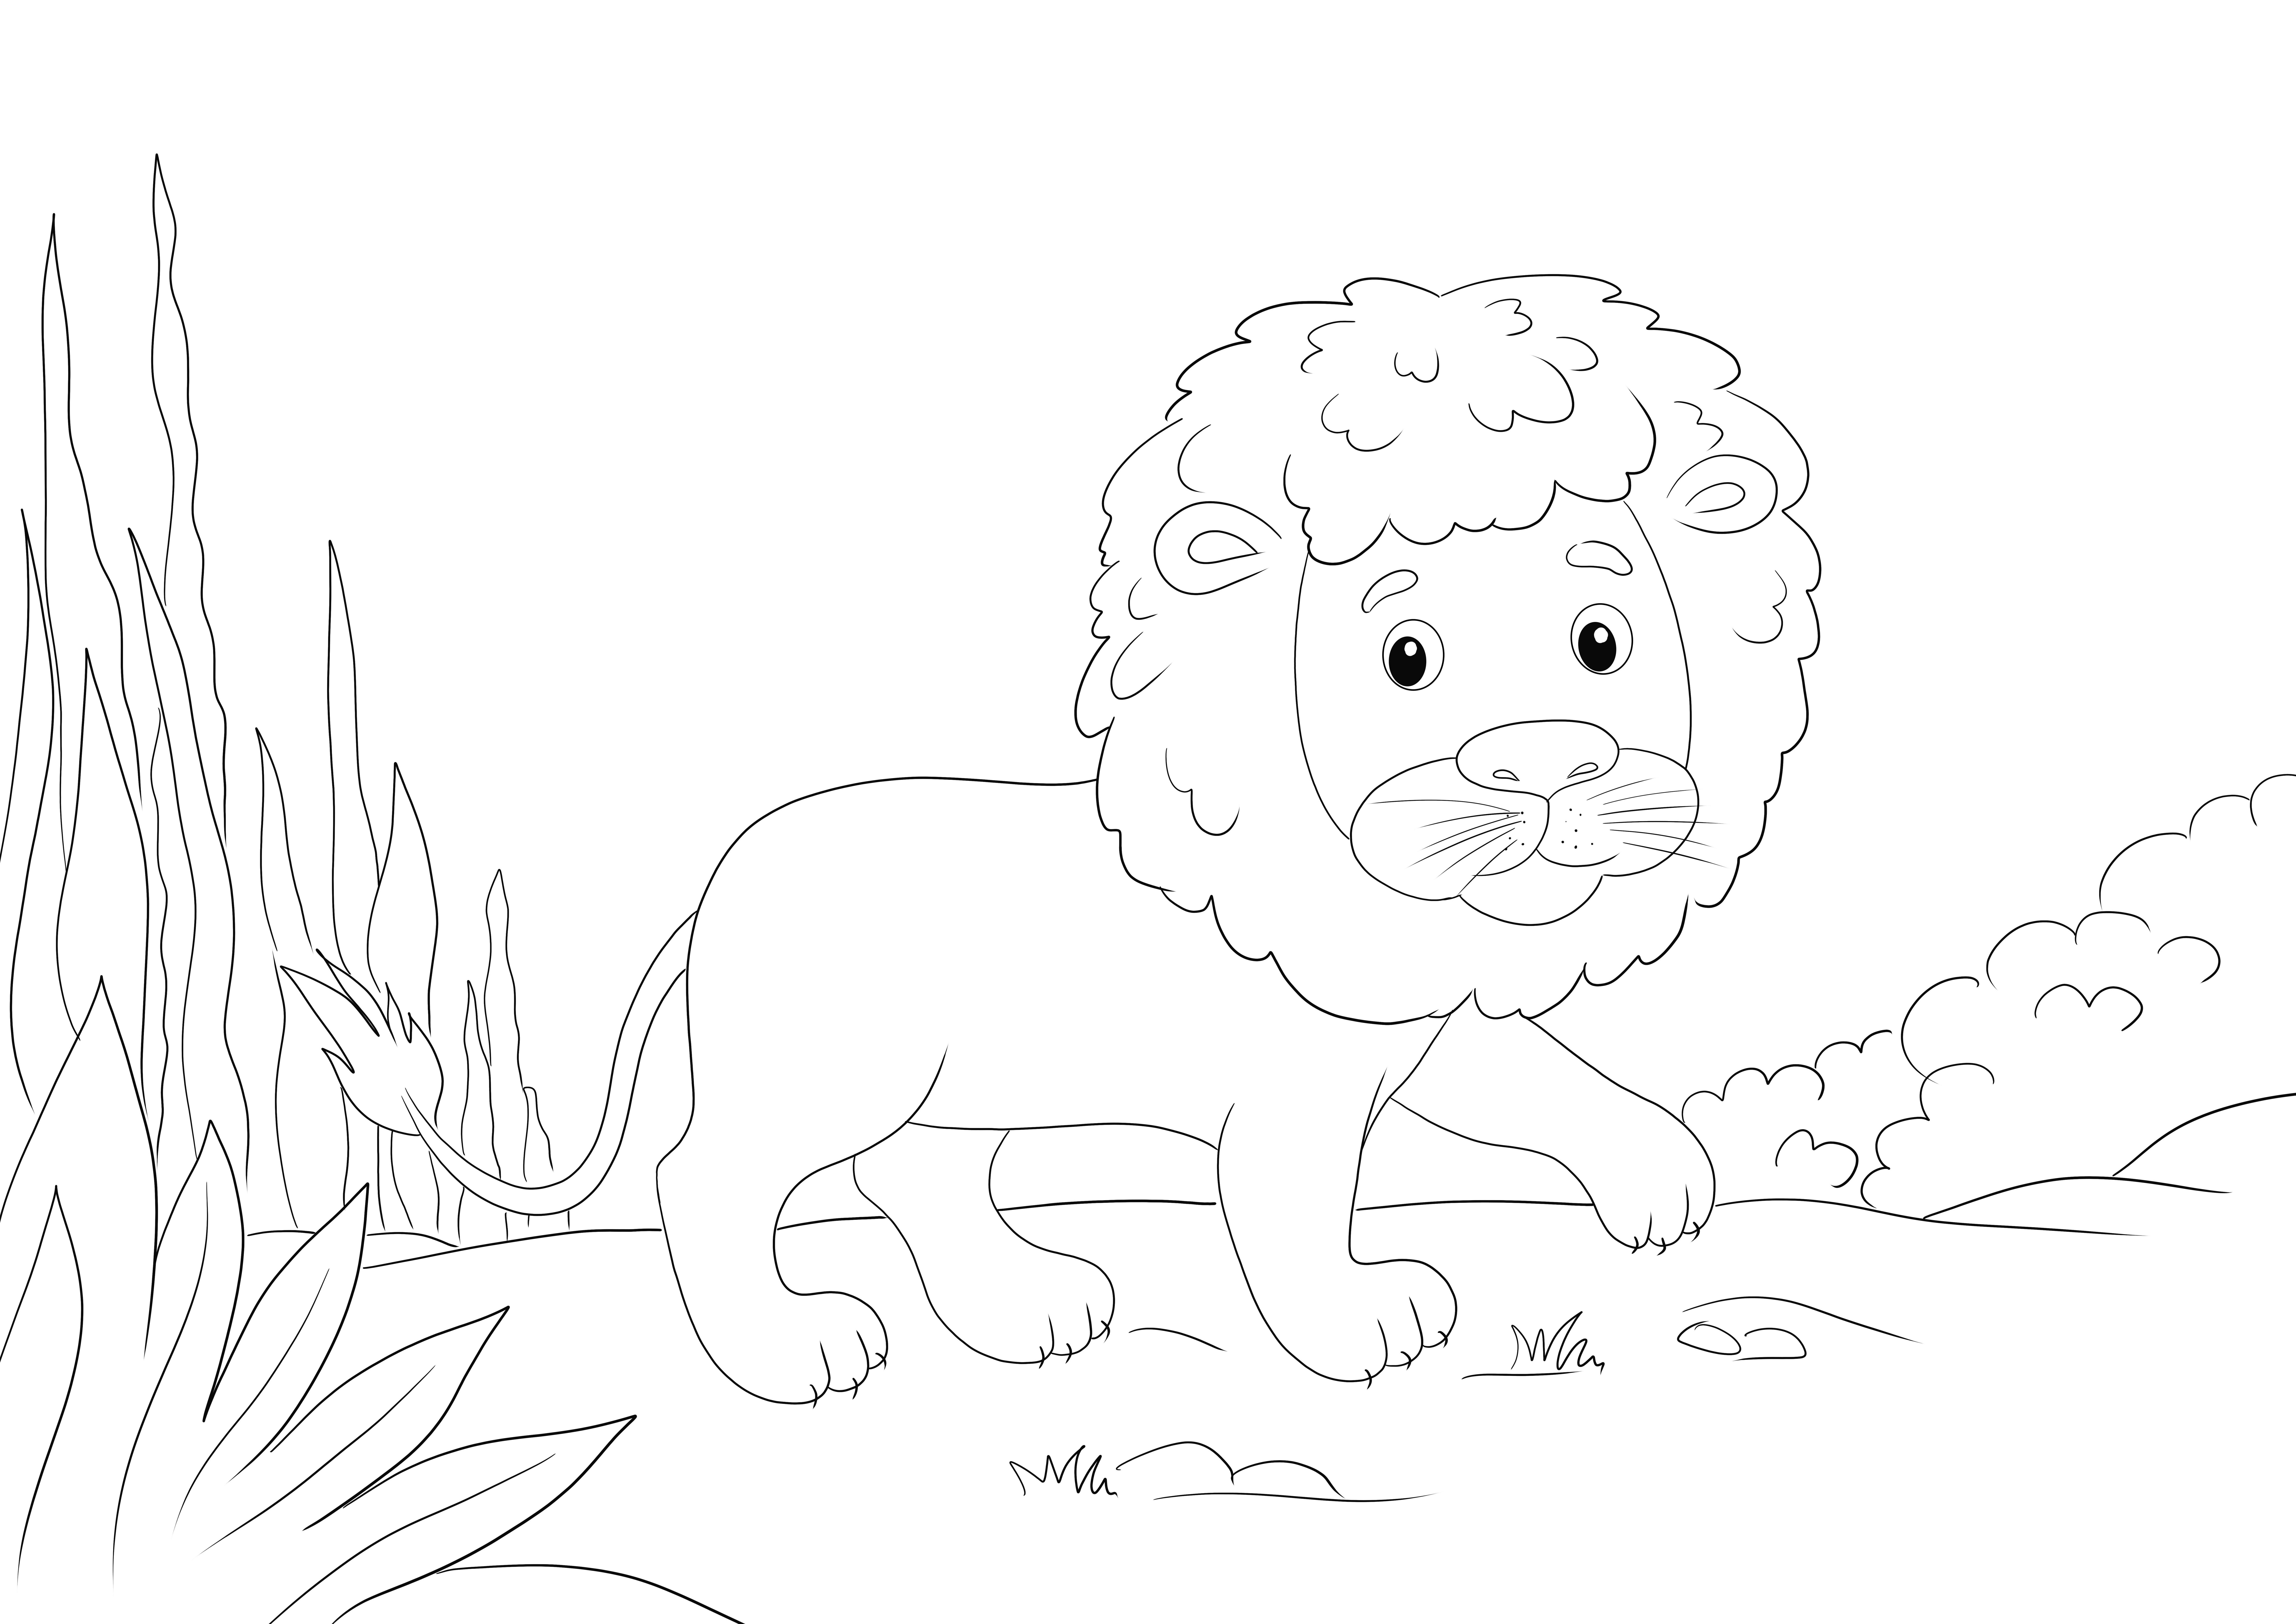 Um lindo leão andando no deserto está pronto para ser impresso e colorido